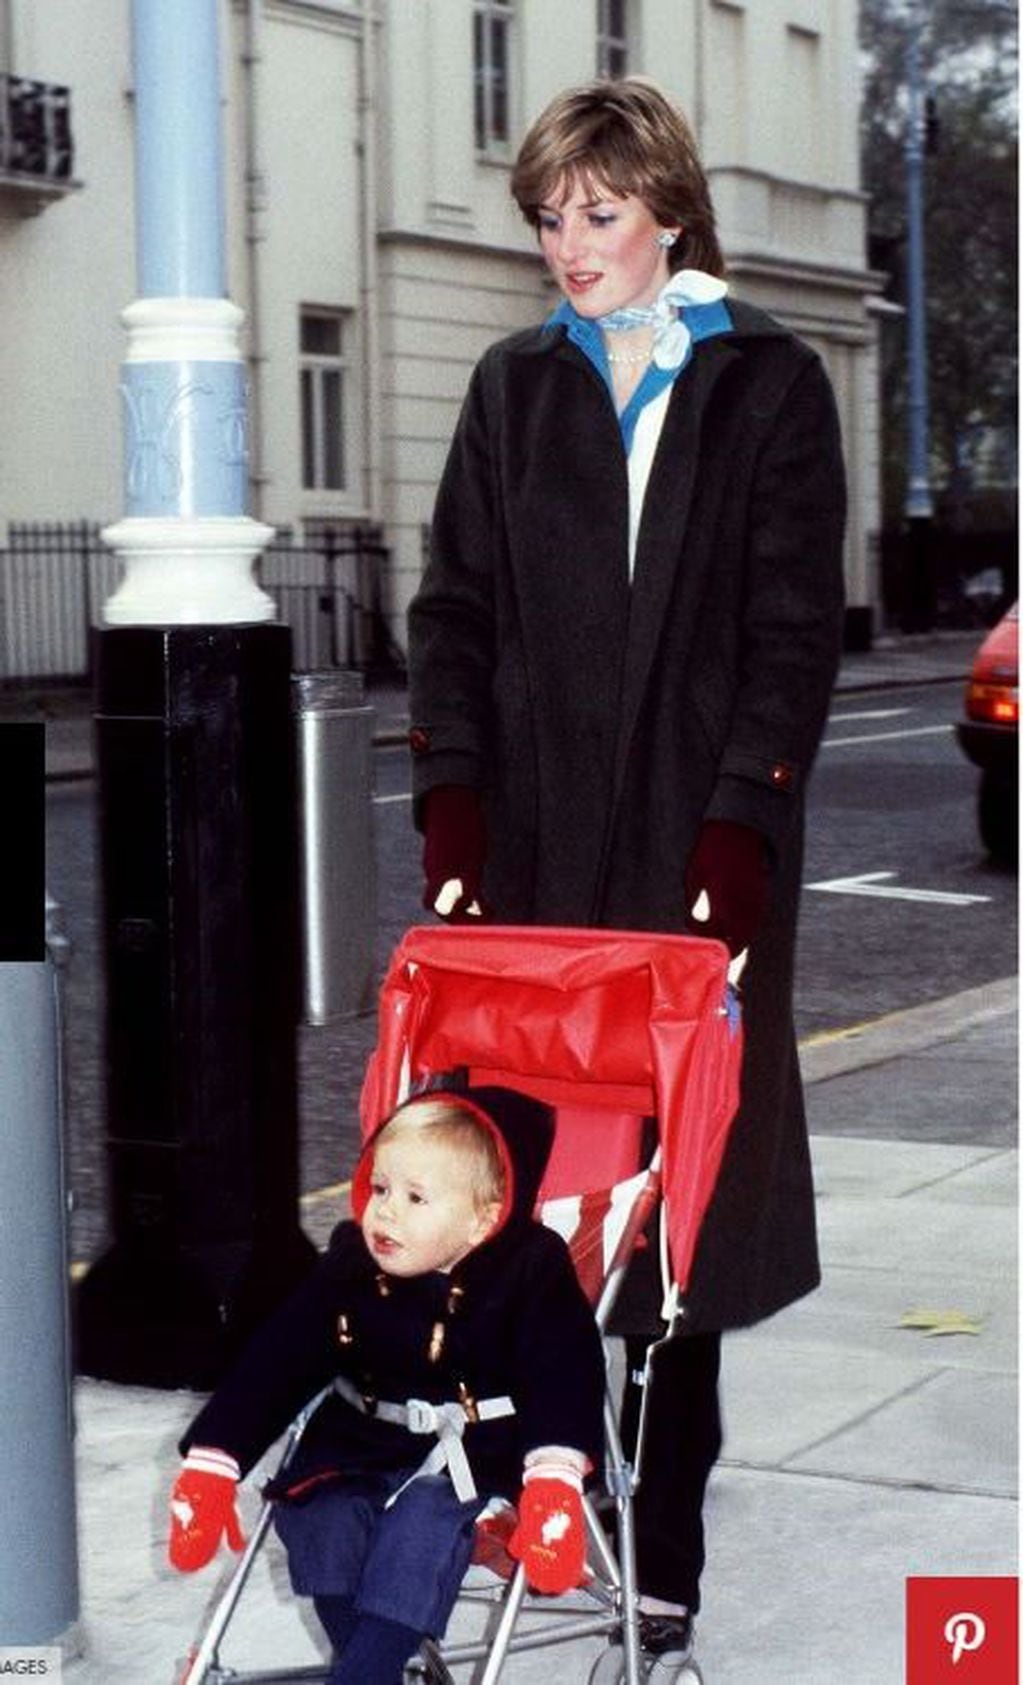 1980. Paseando por el distrito de Eaton Square en Londres durante su etapa de niñera con 19 años.